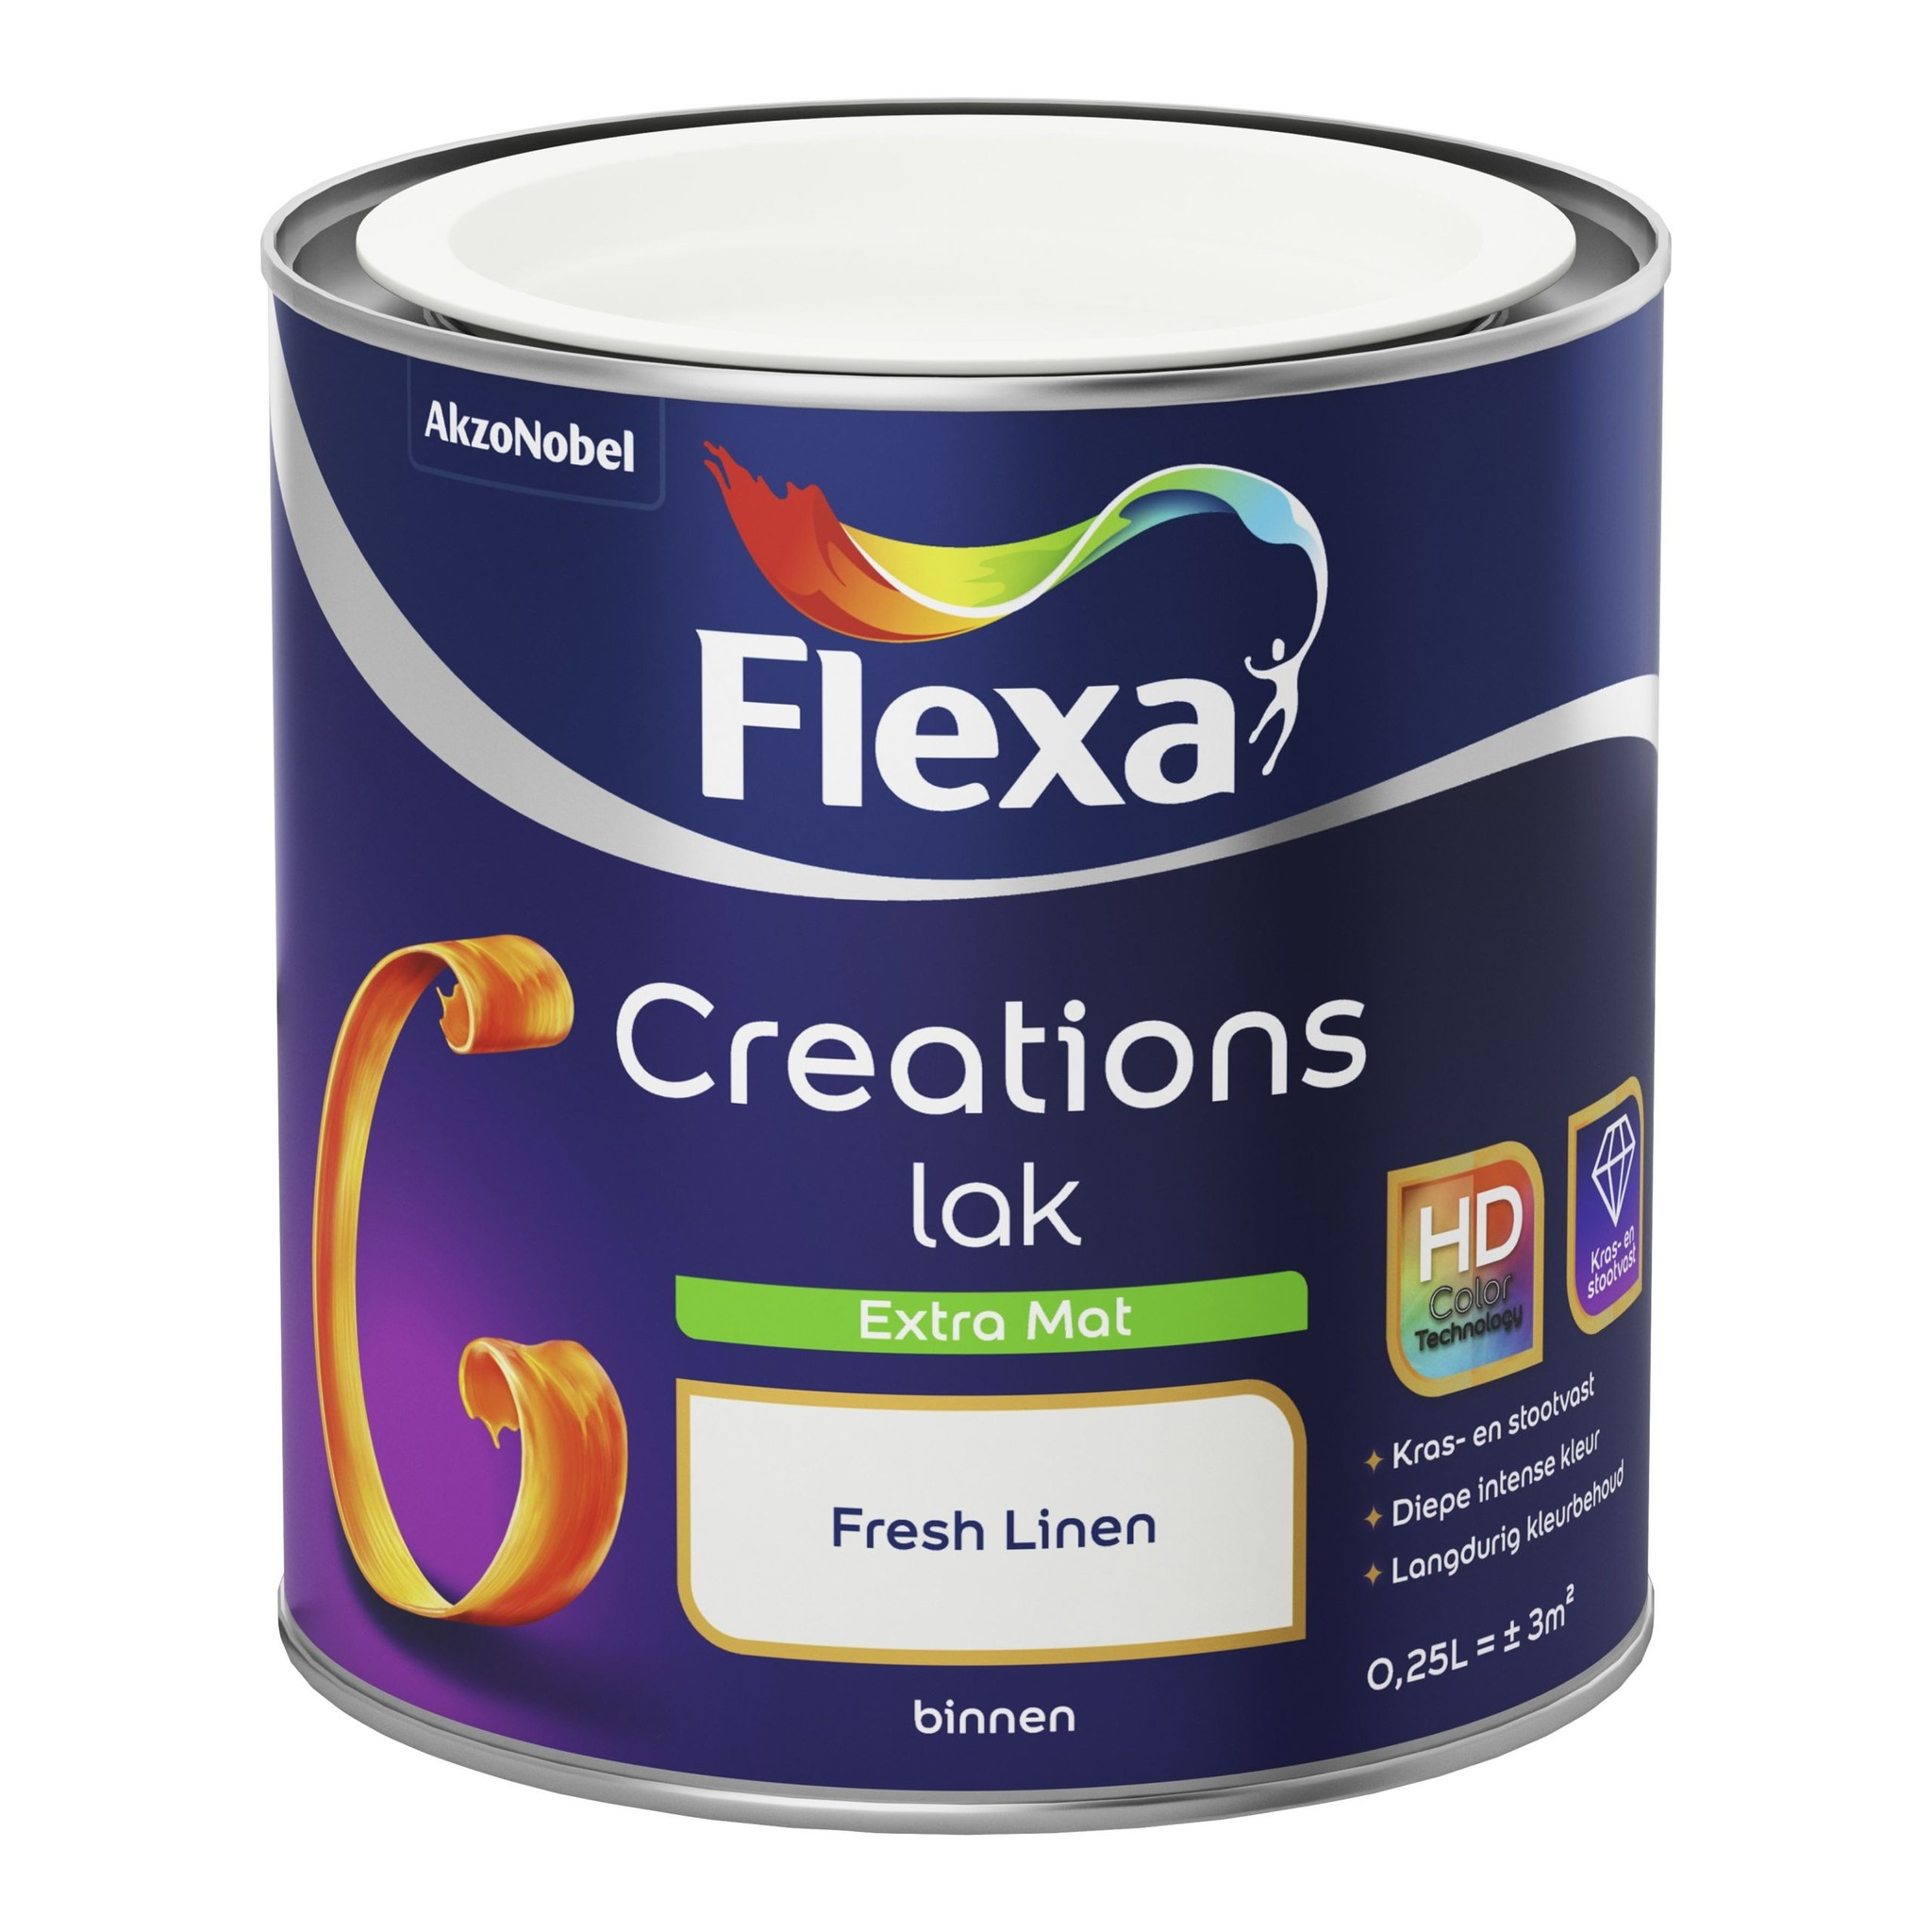 Flexa Creations Lak Extra Mat - Fresh Linen